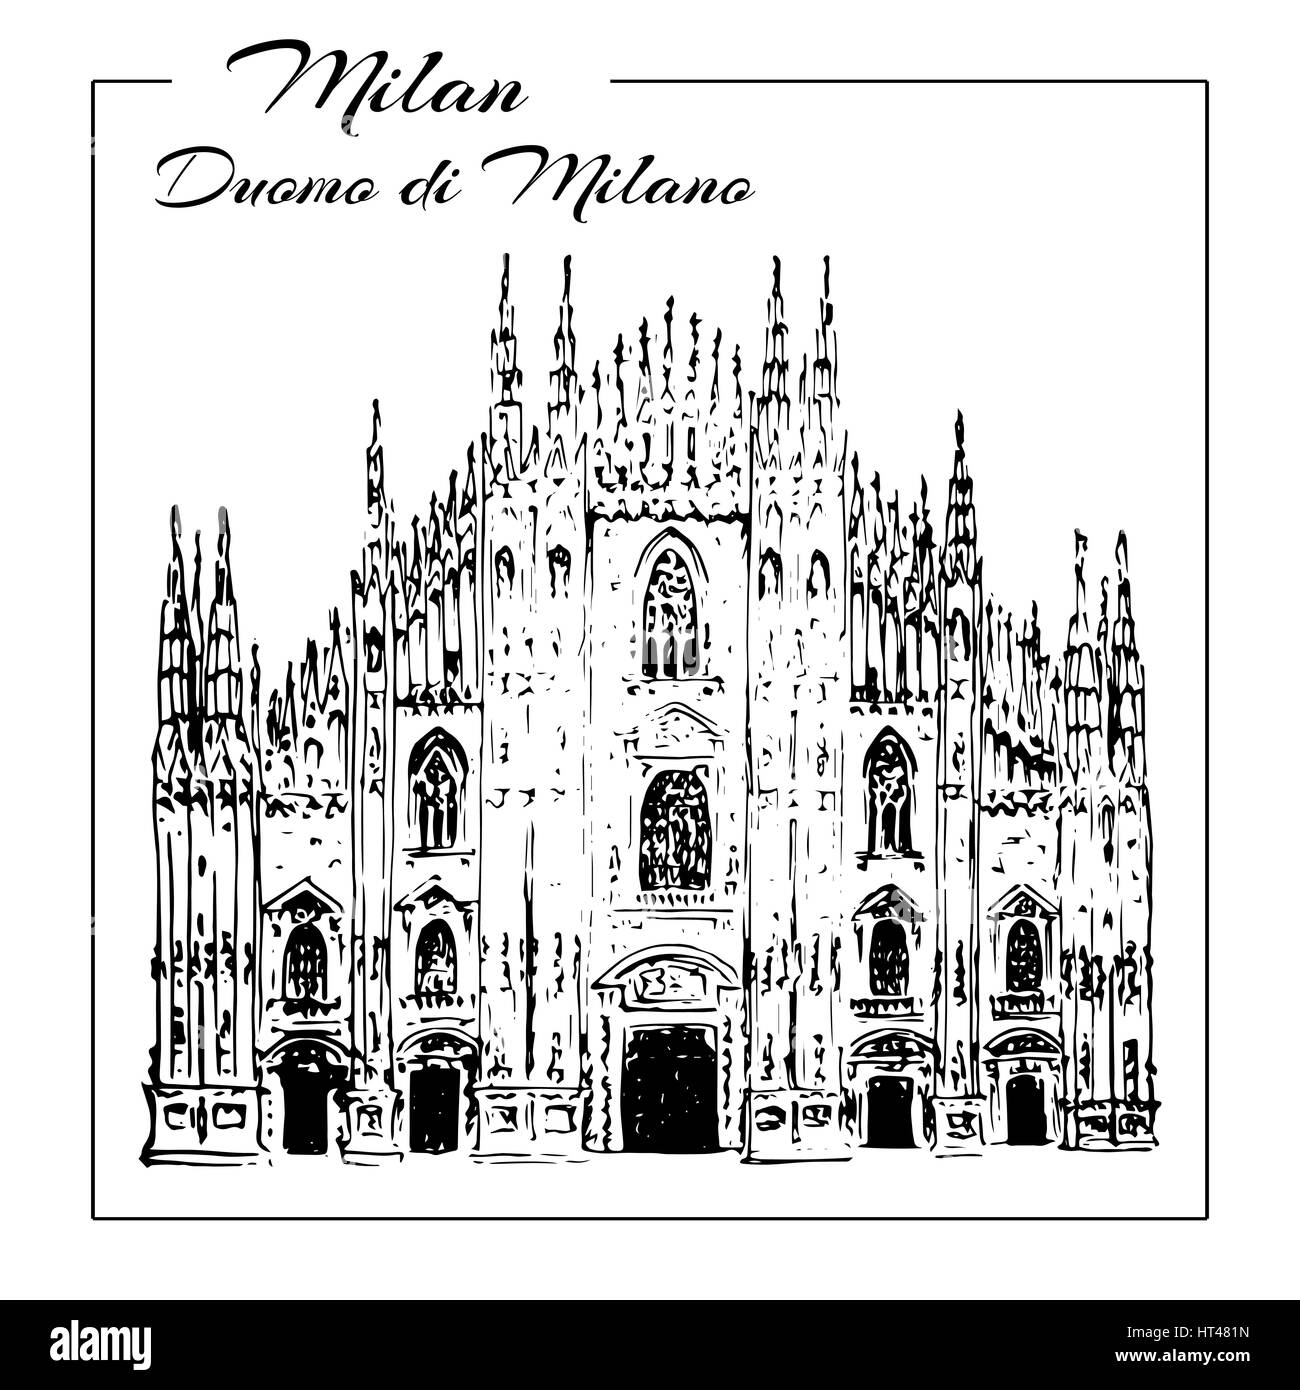 Duomo di Milano. Italia Turismo. Duomo di Milano. Mano bozzetto illustrazione. Può essere utilizzato in pubblicità, viaggiare, cartoline, stampe, Illustrazione Vettoriale